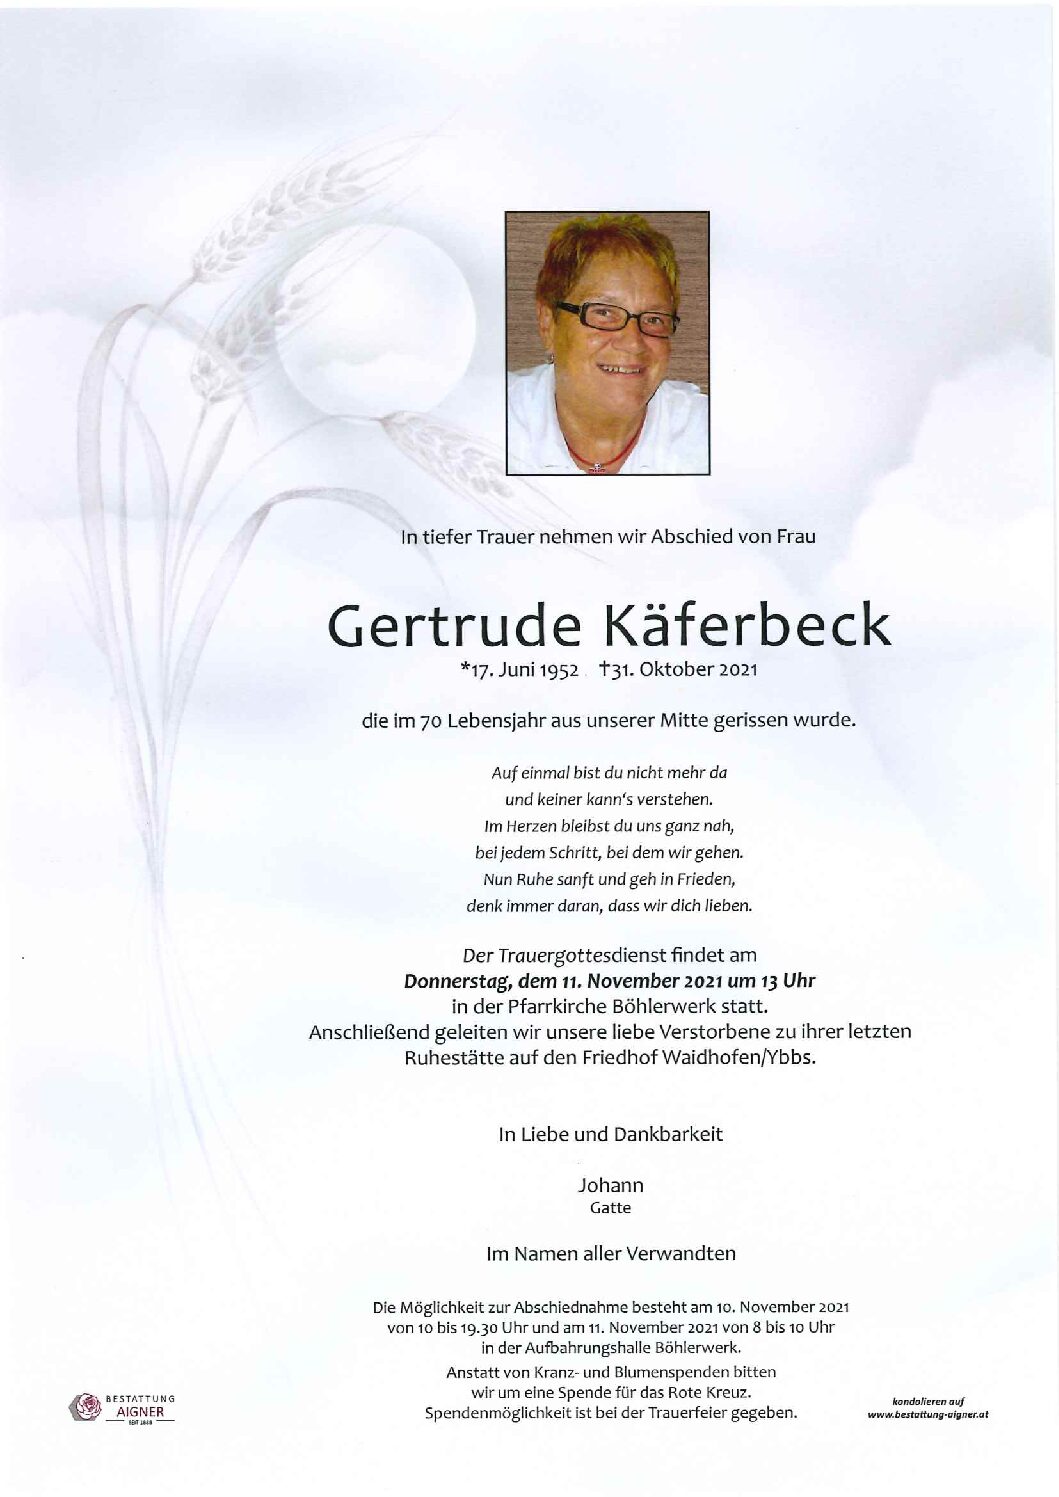 Gertrude Käferbeck